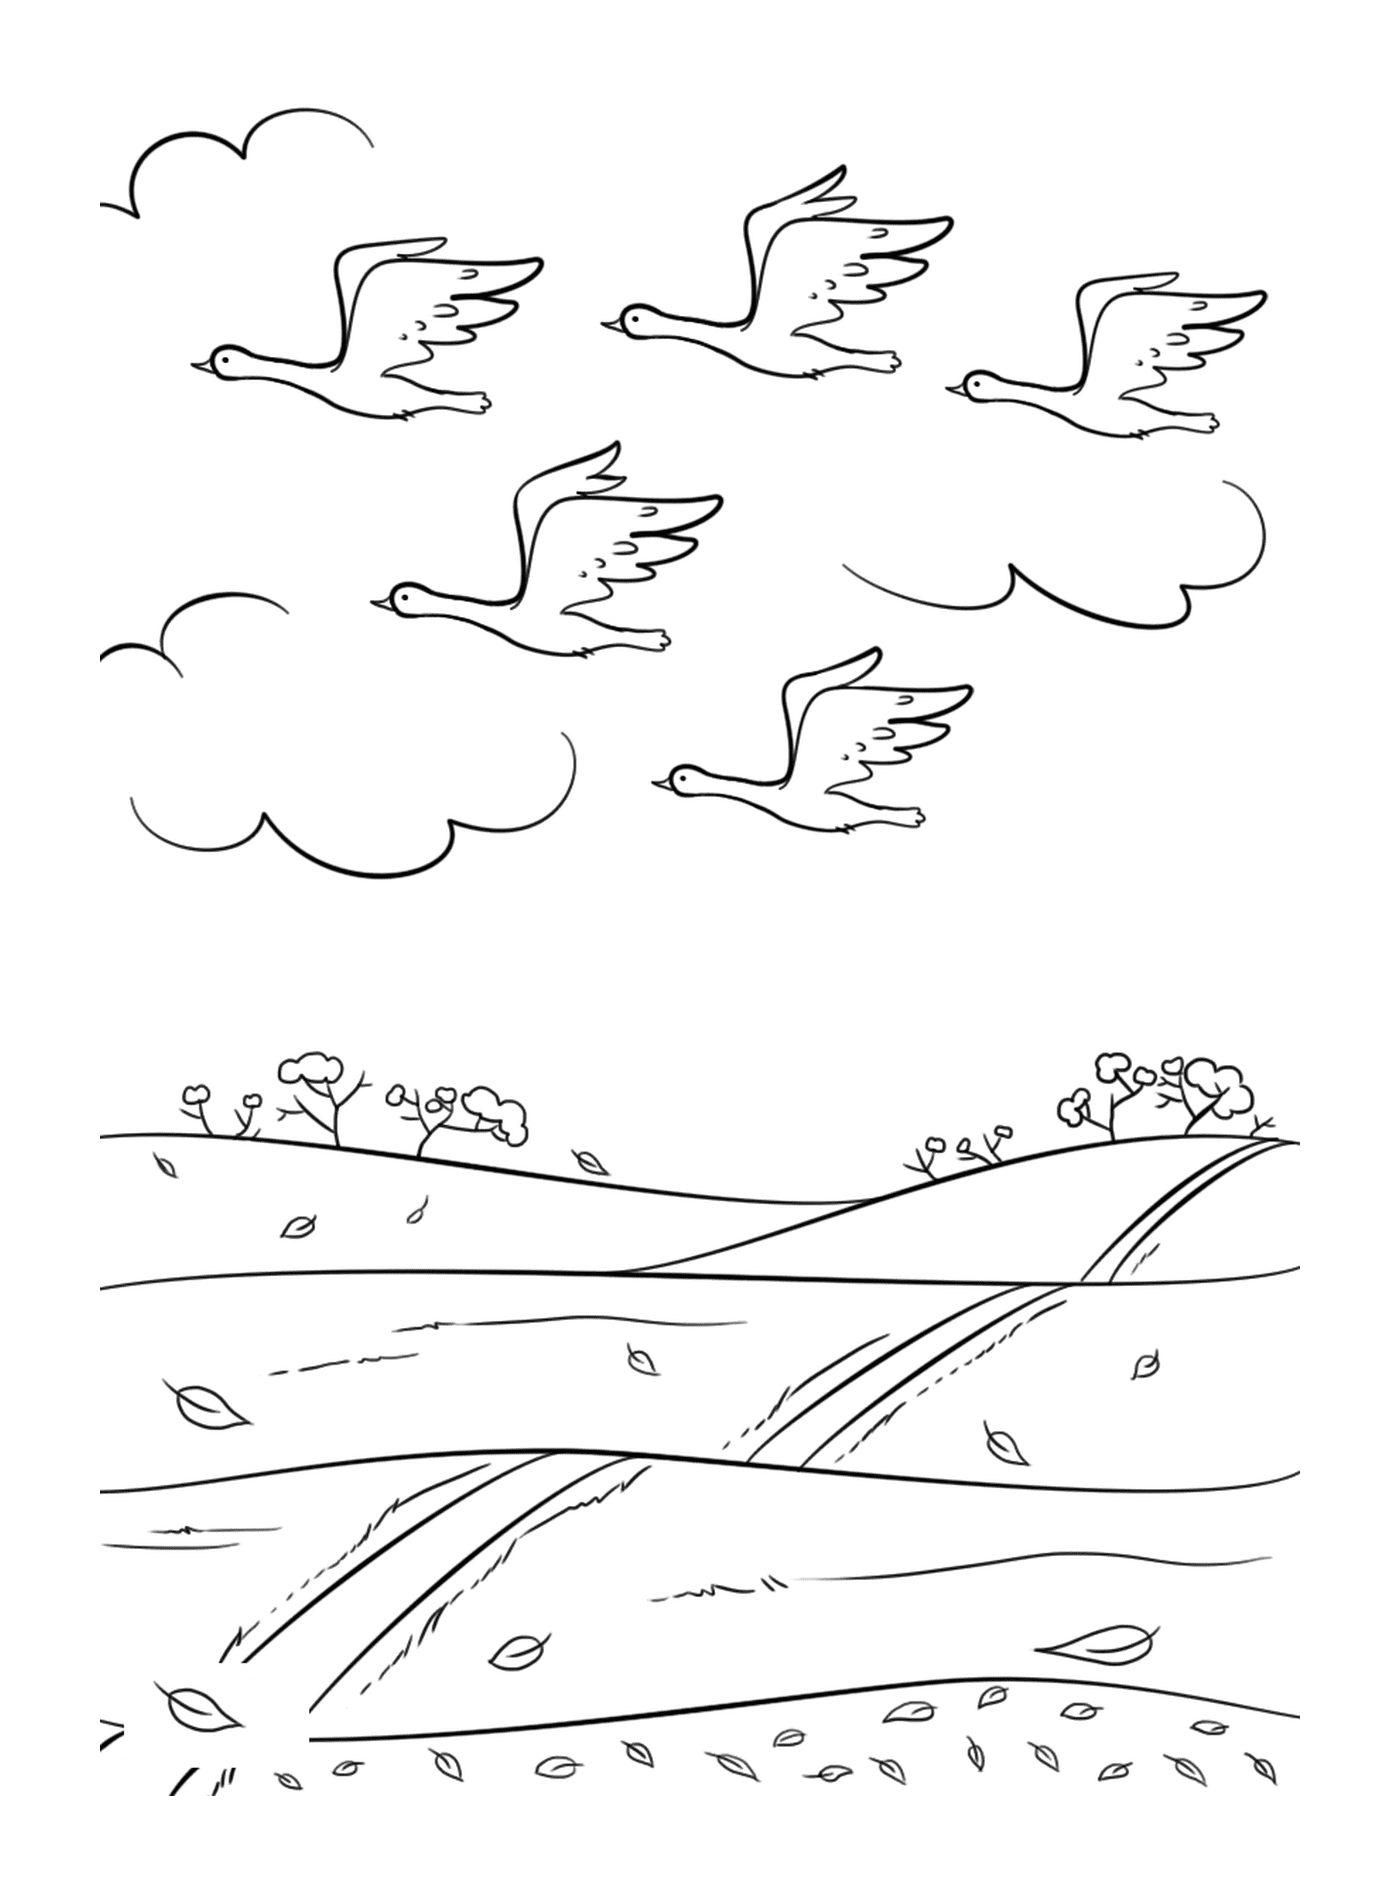   Un groupe d'oiseaux survolant un champ 